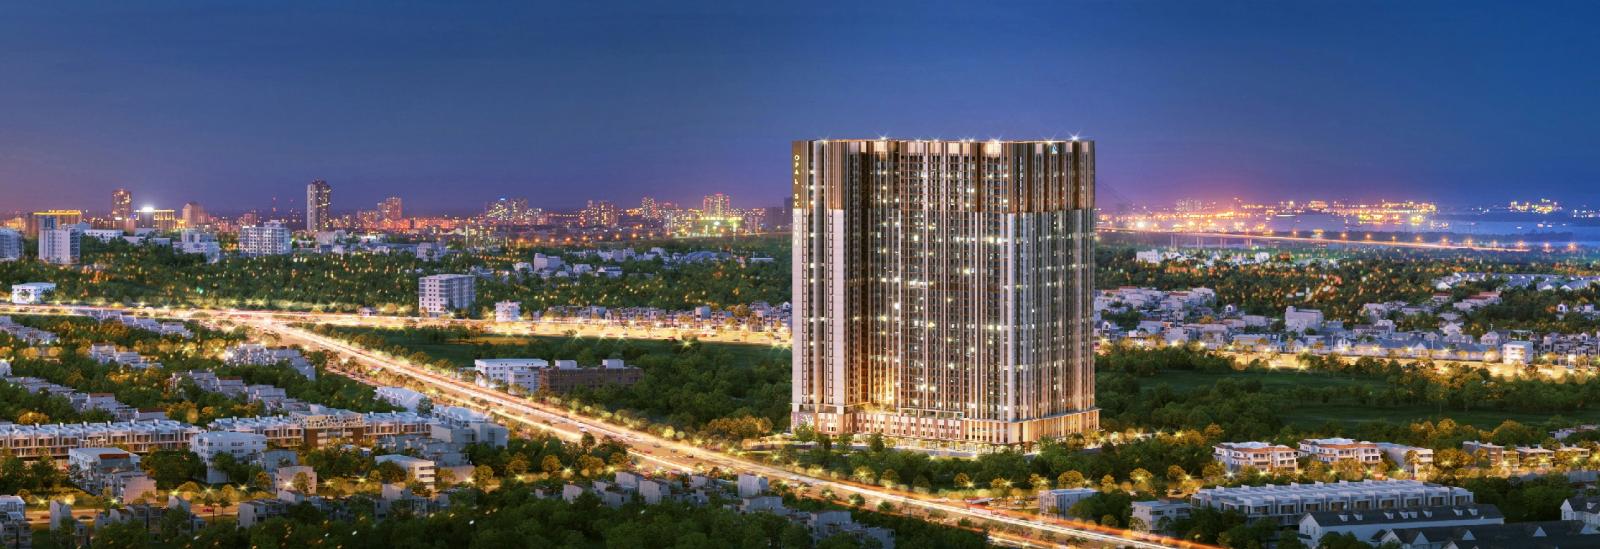 Dự án Opal Skyline nằm trên mặt tiền đường Nguyễn Văn Tiết, trung tâm TP. Thuận An, cách Quốc lộ 13 chỉ 800m